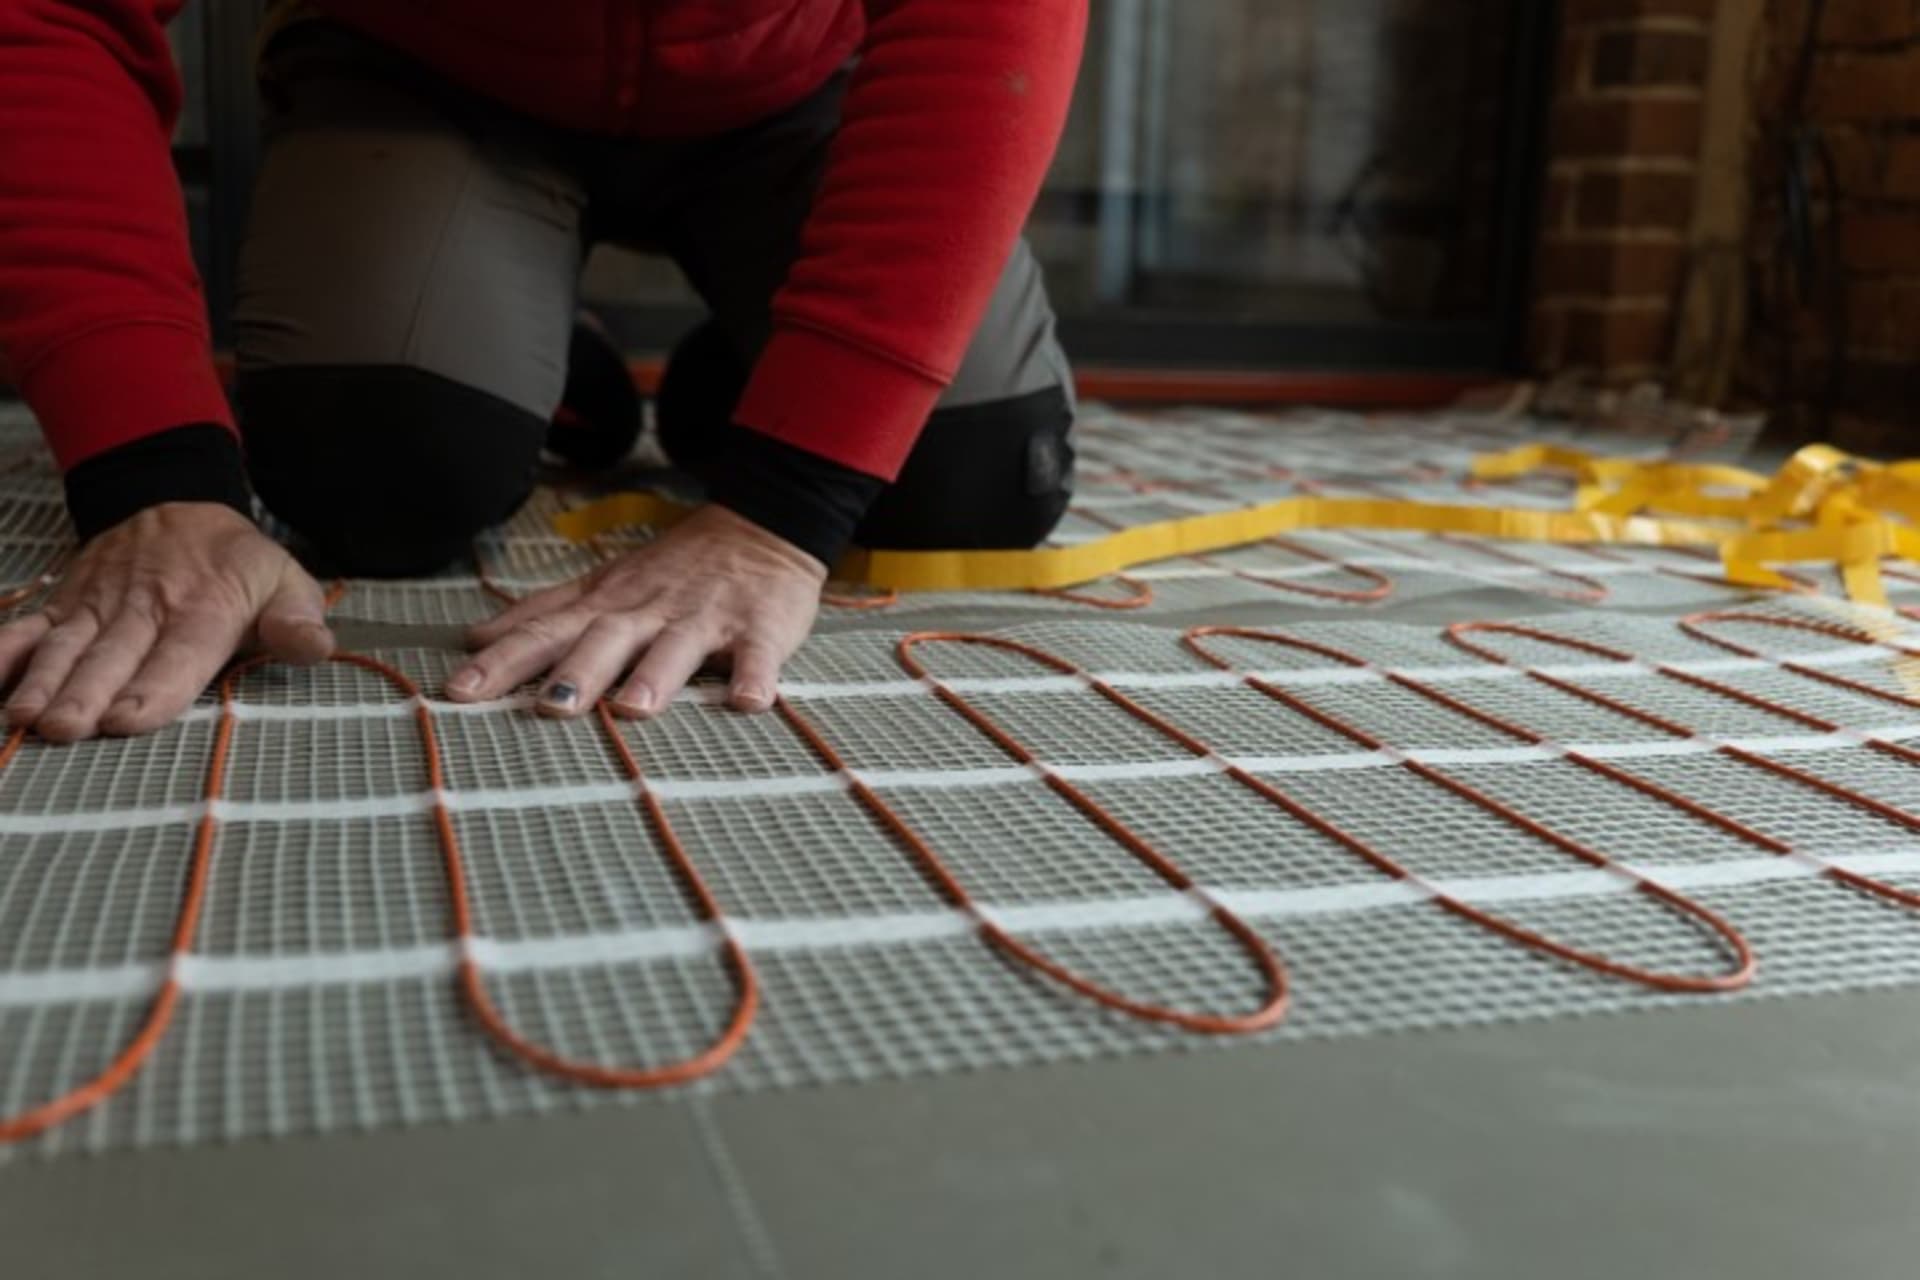 Podlahové vytápění potřebuje řádnou přípravu podlahy